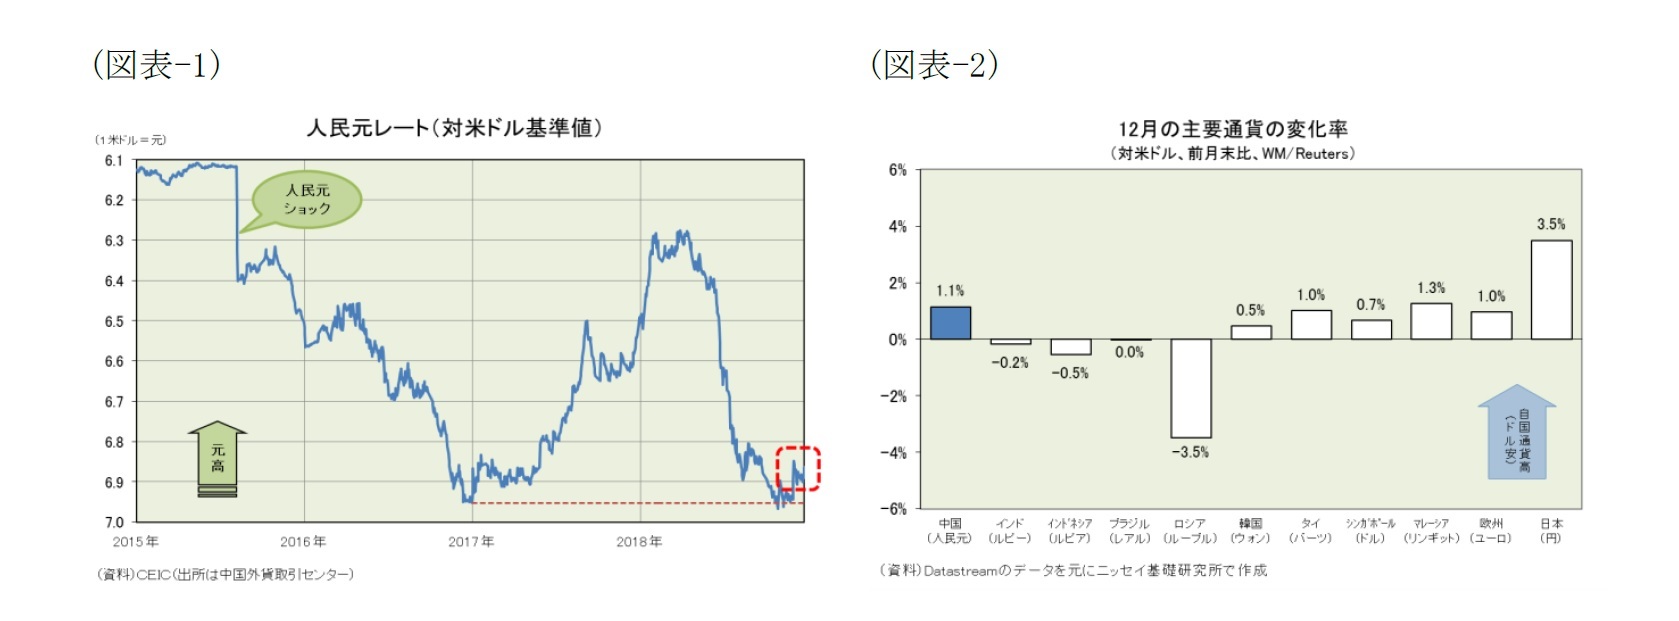 (図表-1)人民元レート(対米ドル基準値)/(図表-2)12月の主要通貨の変化率(対米ドル、前月末比、WM/Reuters)